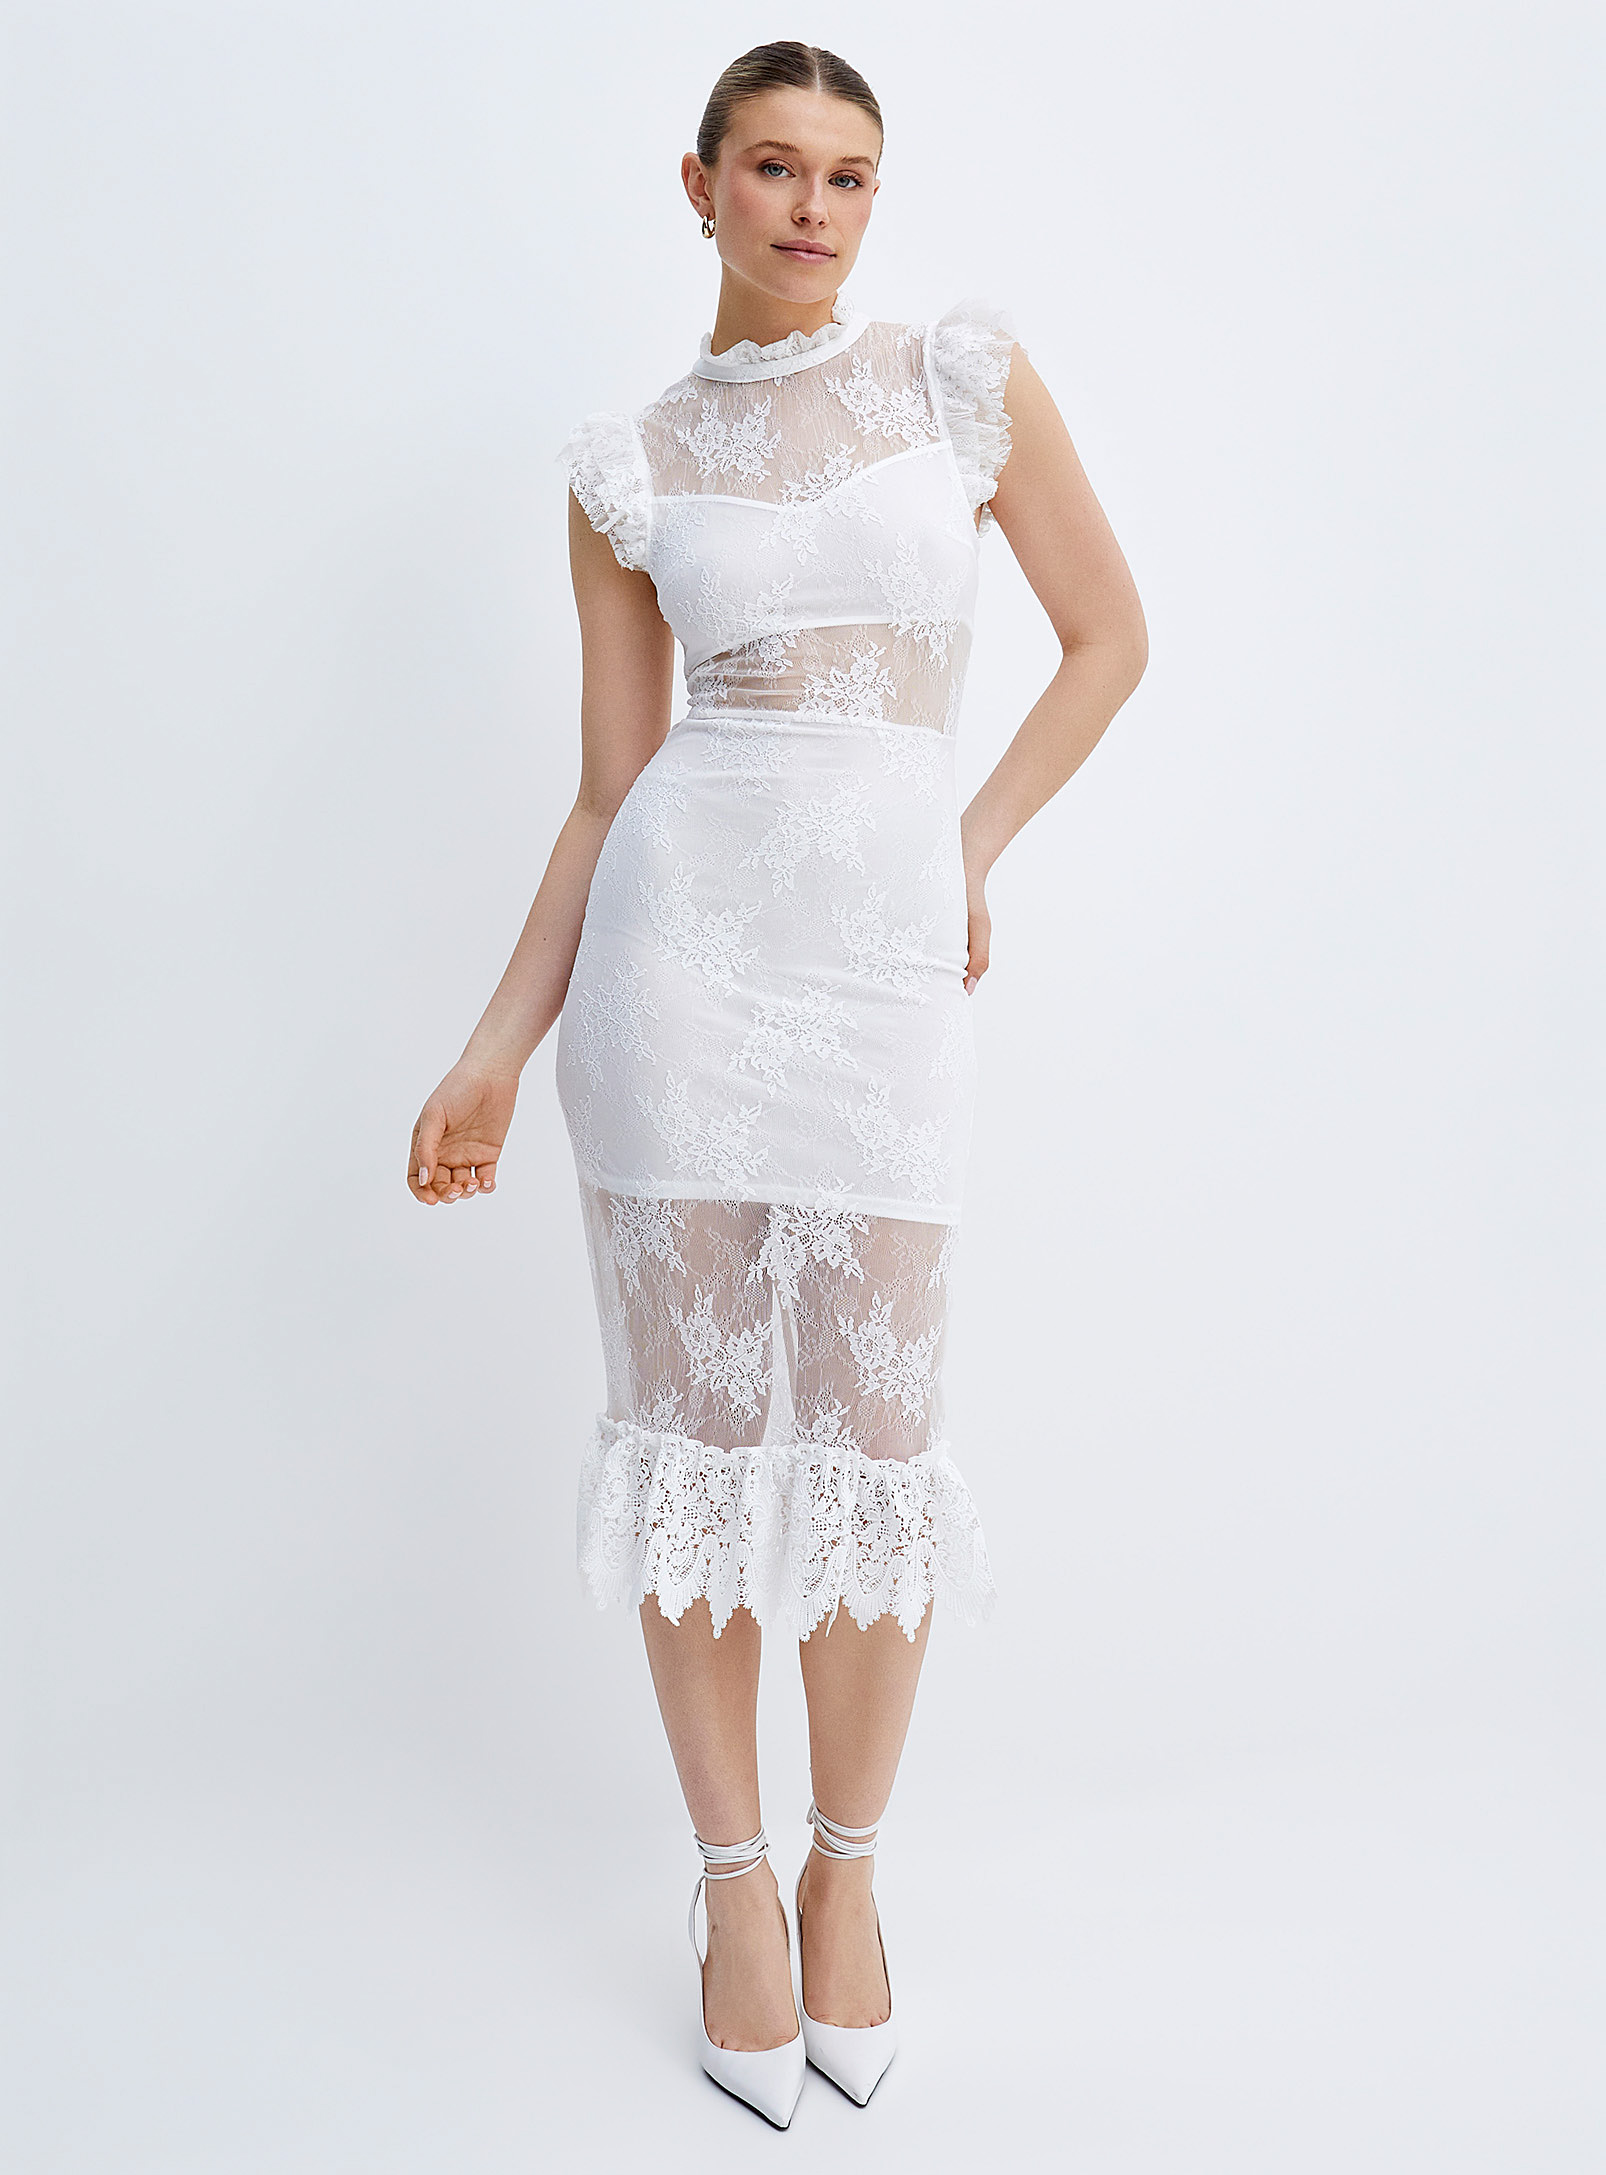 Icone Delicate Lace White Dress